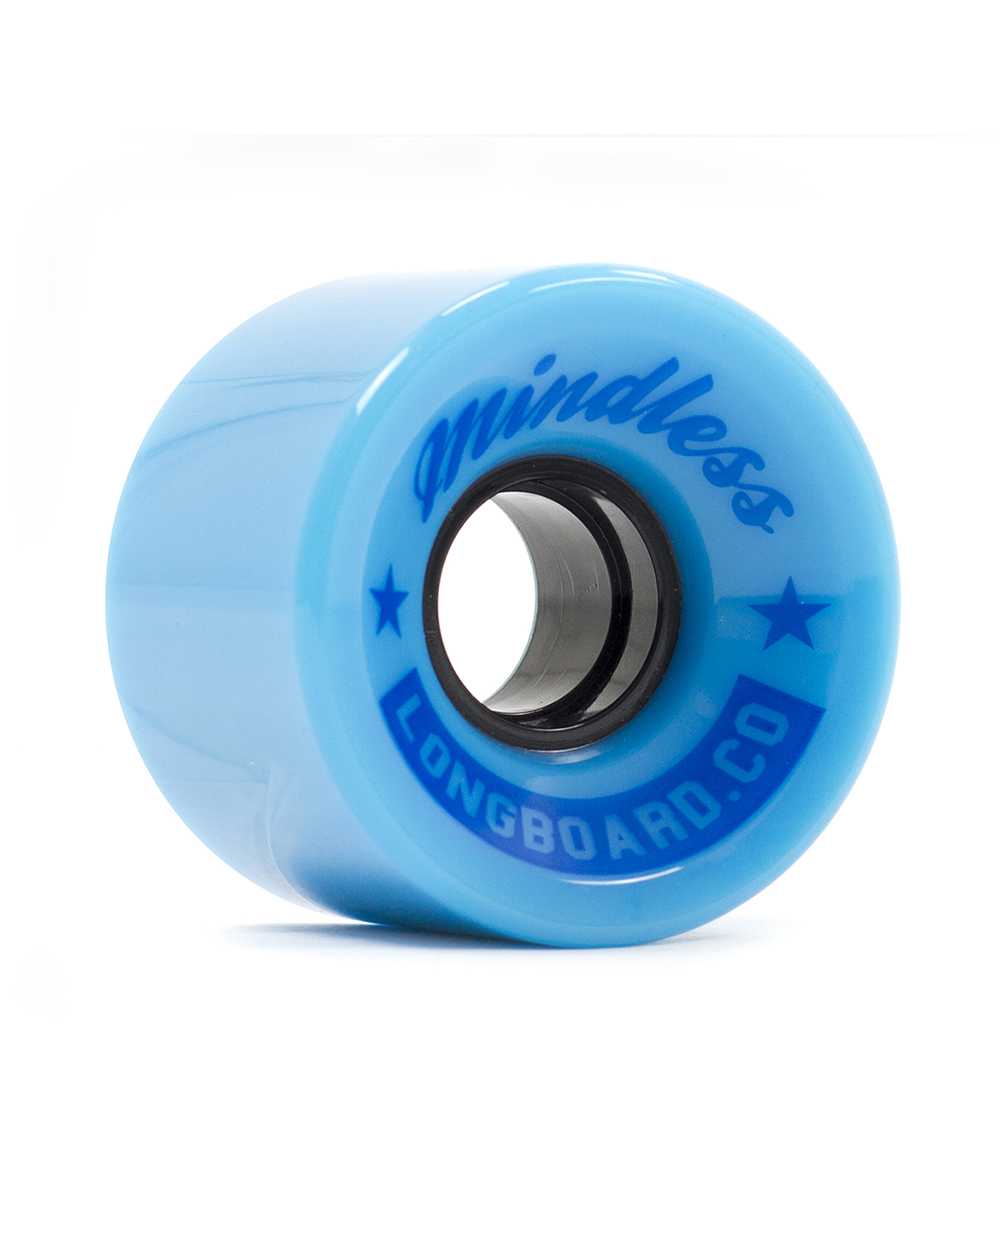 Mindless Cruiser 60mm 83A Skateboard Wheels Light Blue pack of 4